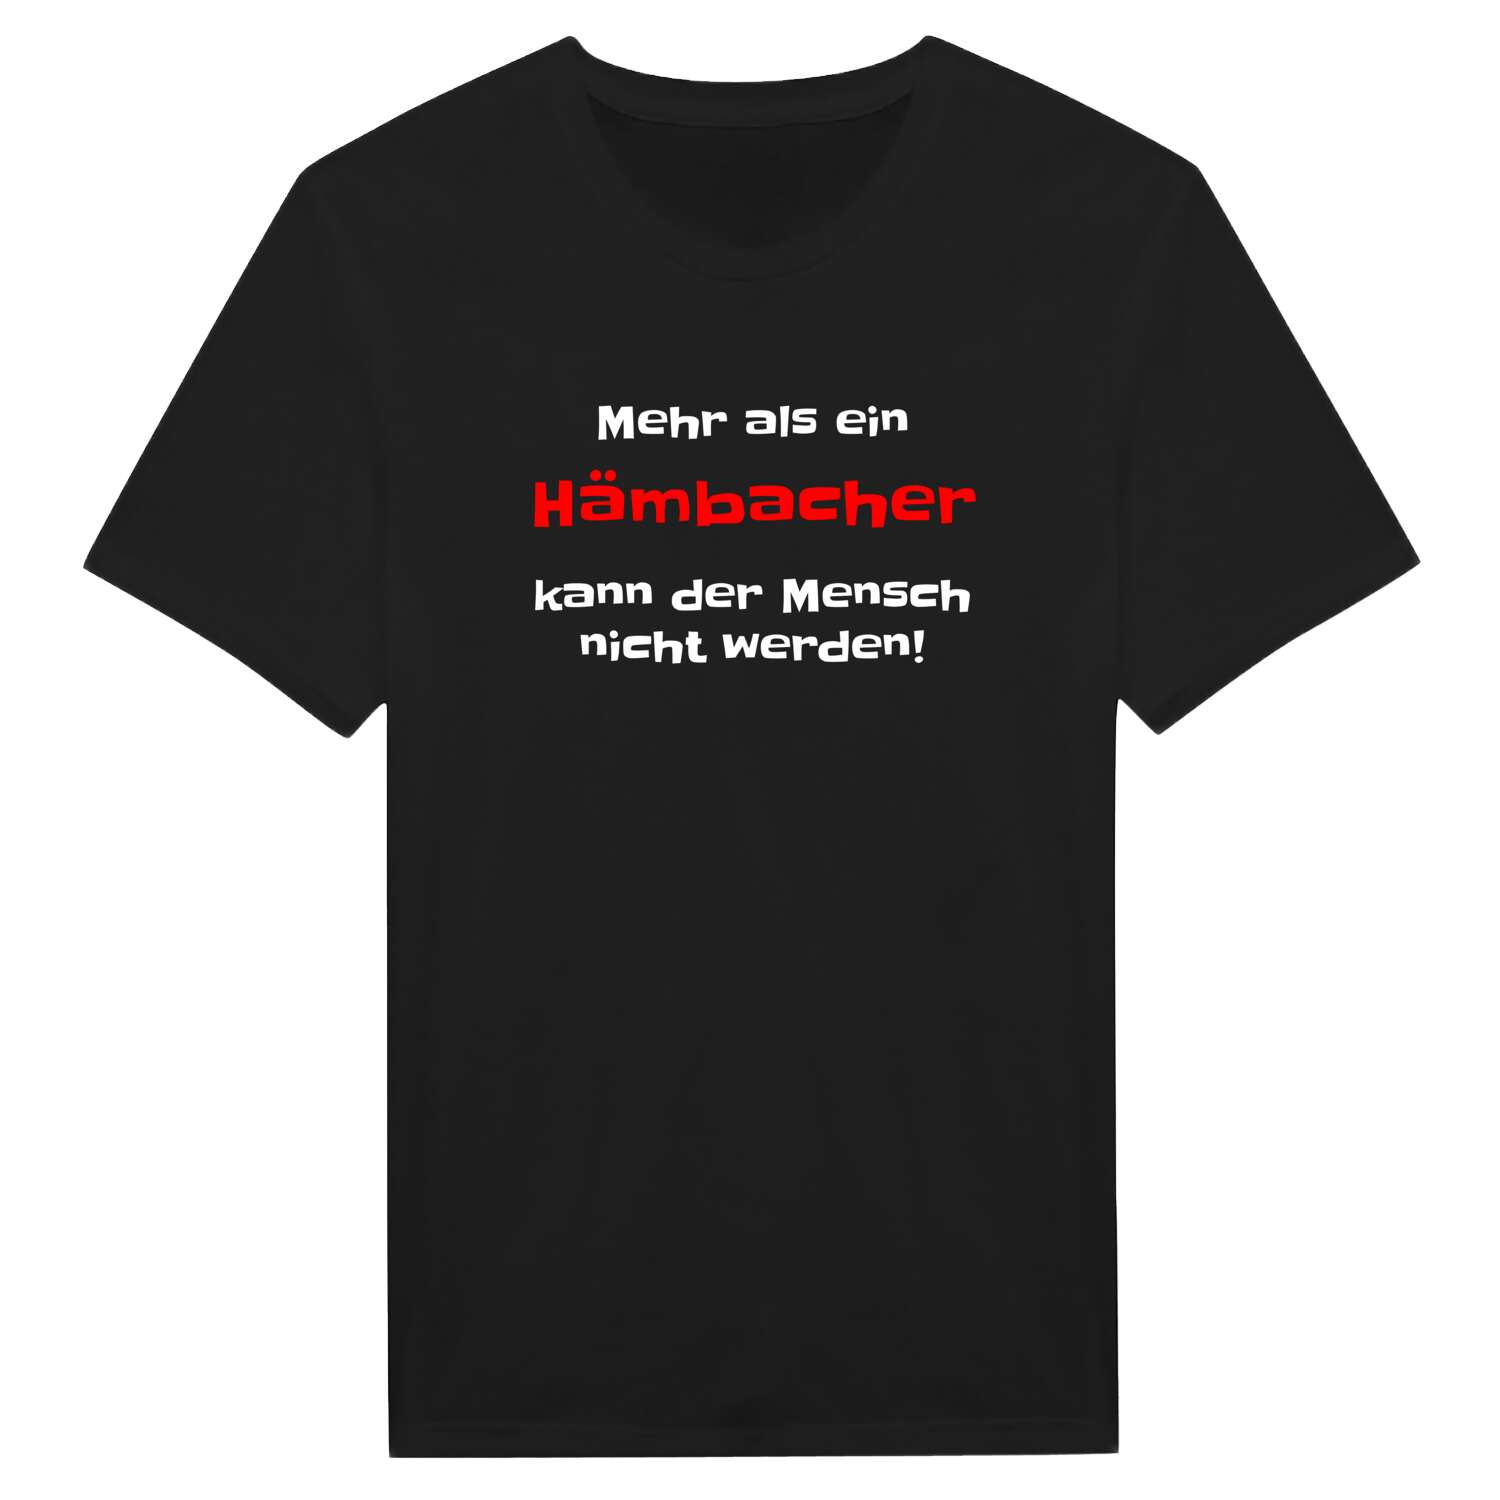 Hämbach T-Shirt »Mehr als ein«